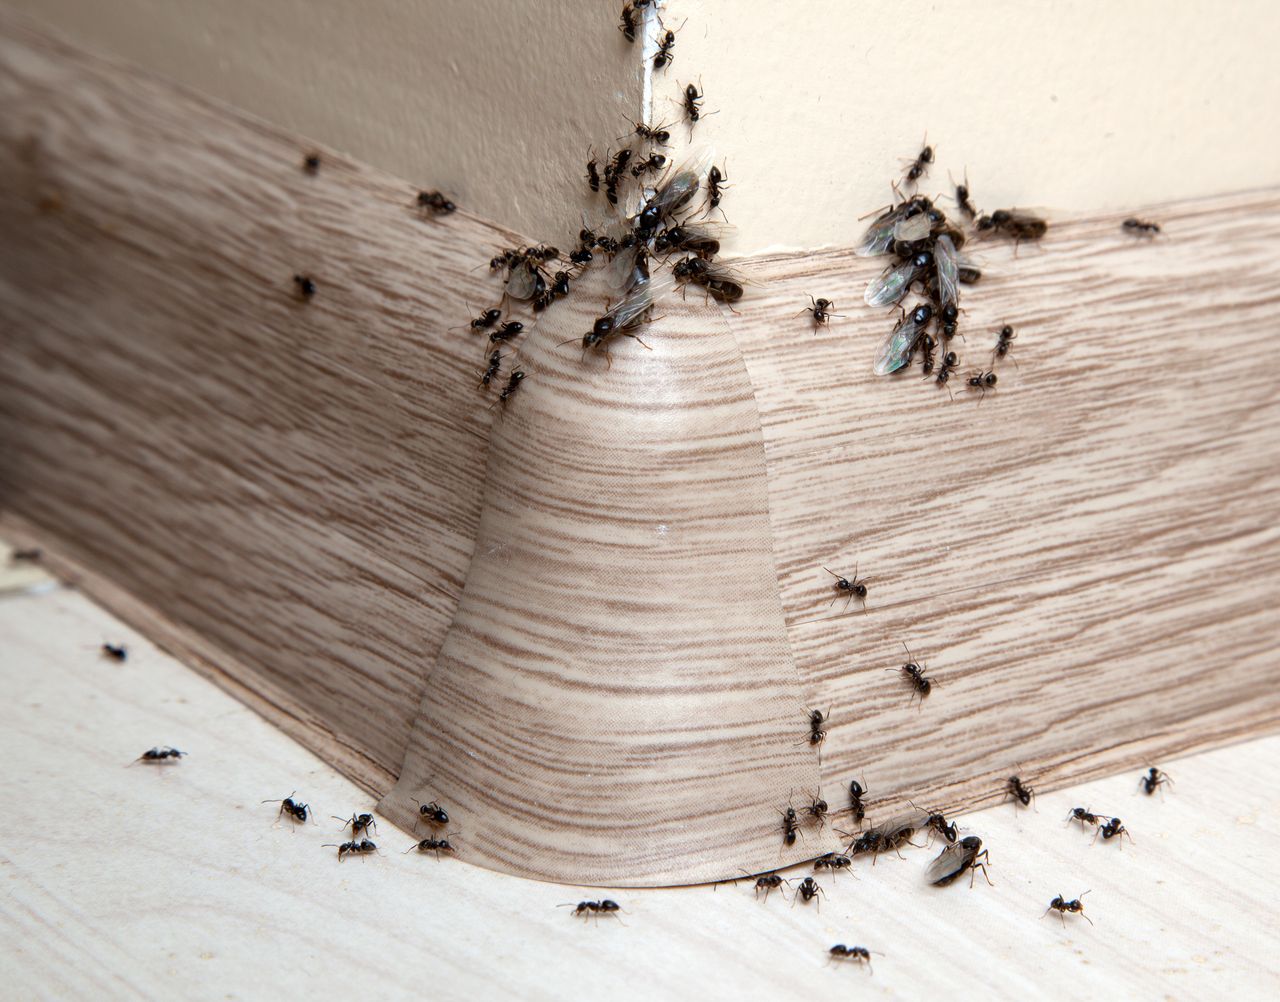 Domowe sposoby na mrówki mogą być bardzo skuteczne